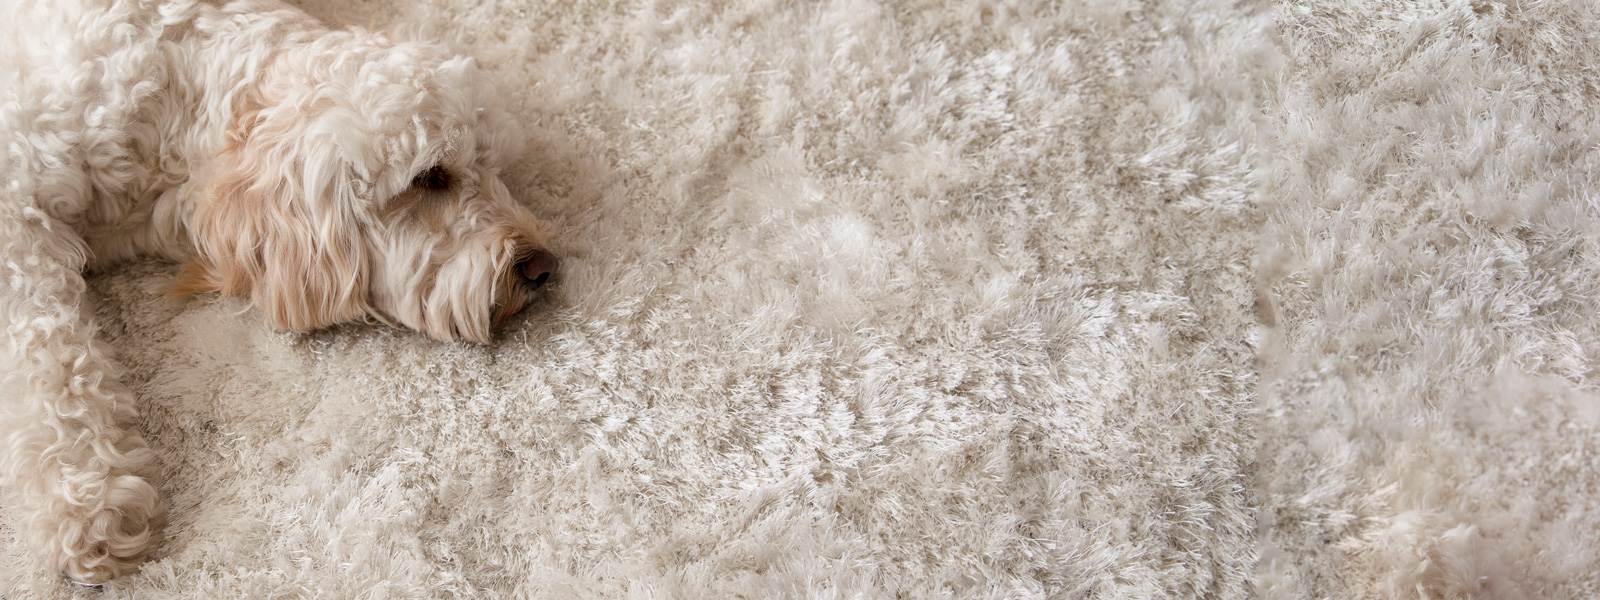 Auf dem Bild sieht man einen Hund der auf einem plüschigen Teppich liegt.